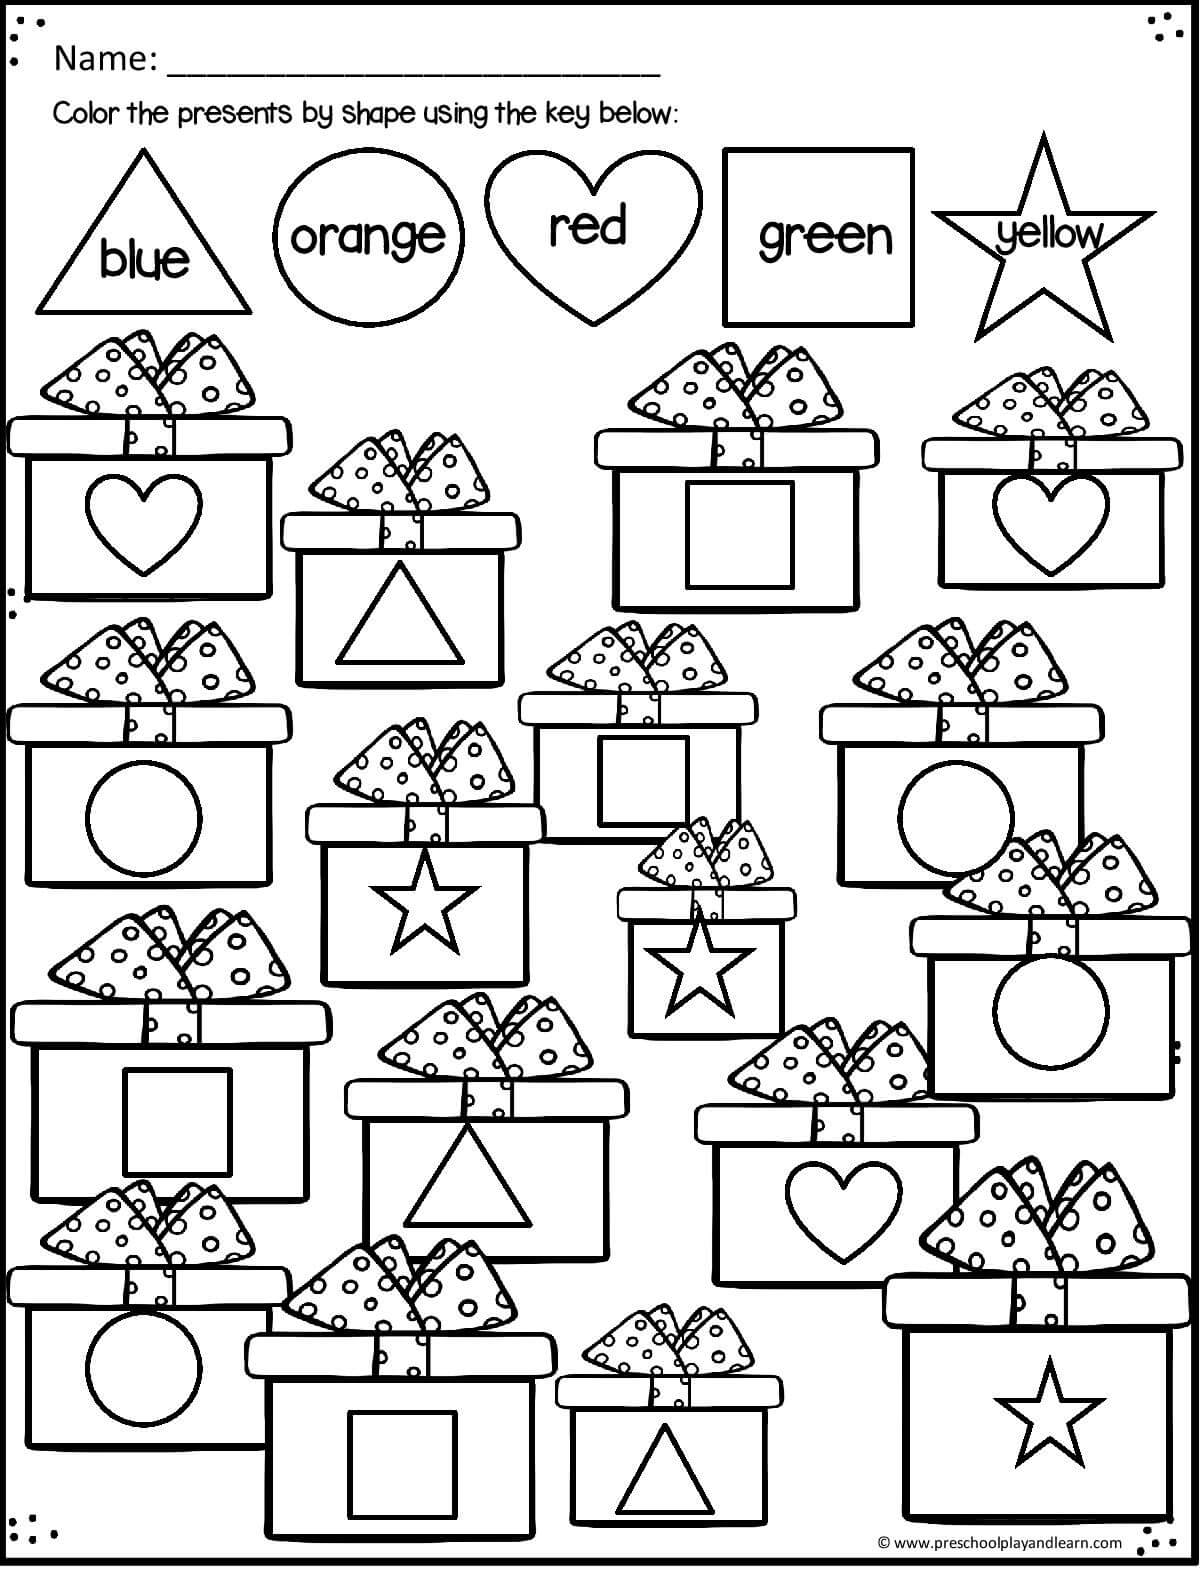 Free Printable Christmas Worksheets For Preschoolers